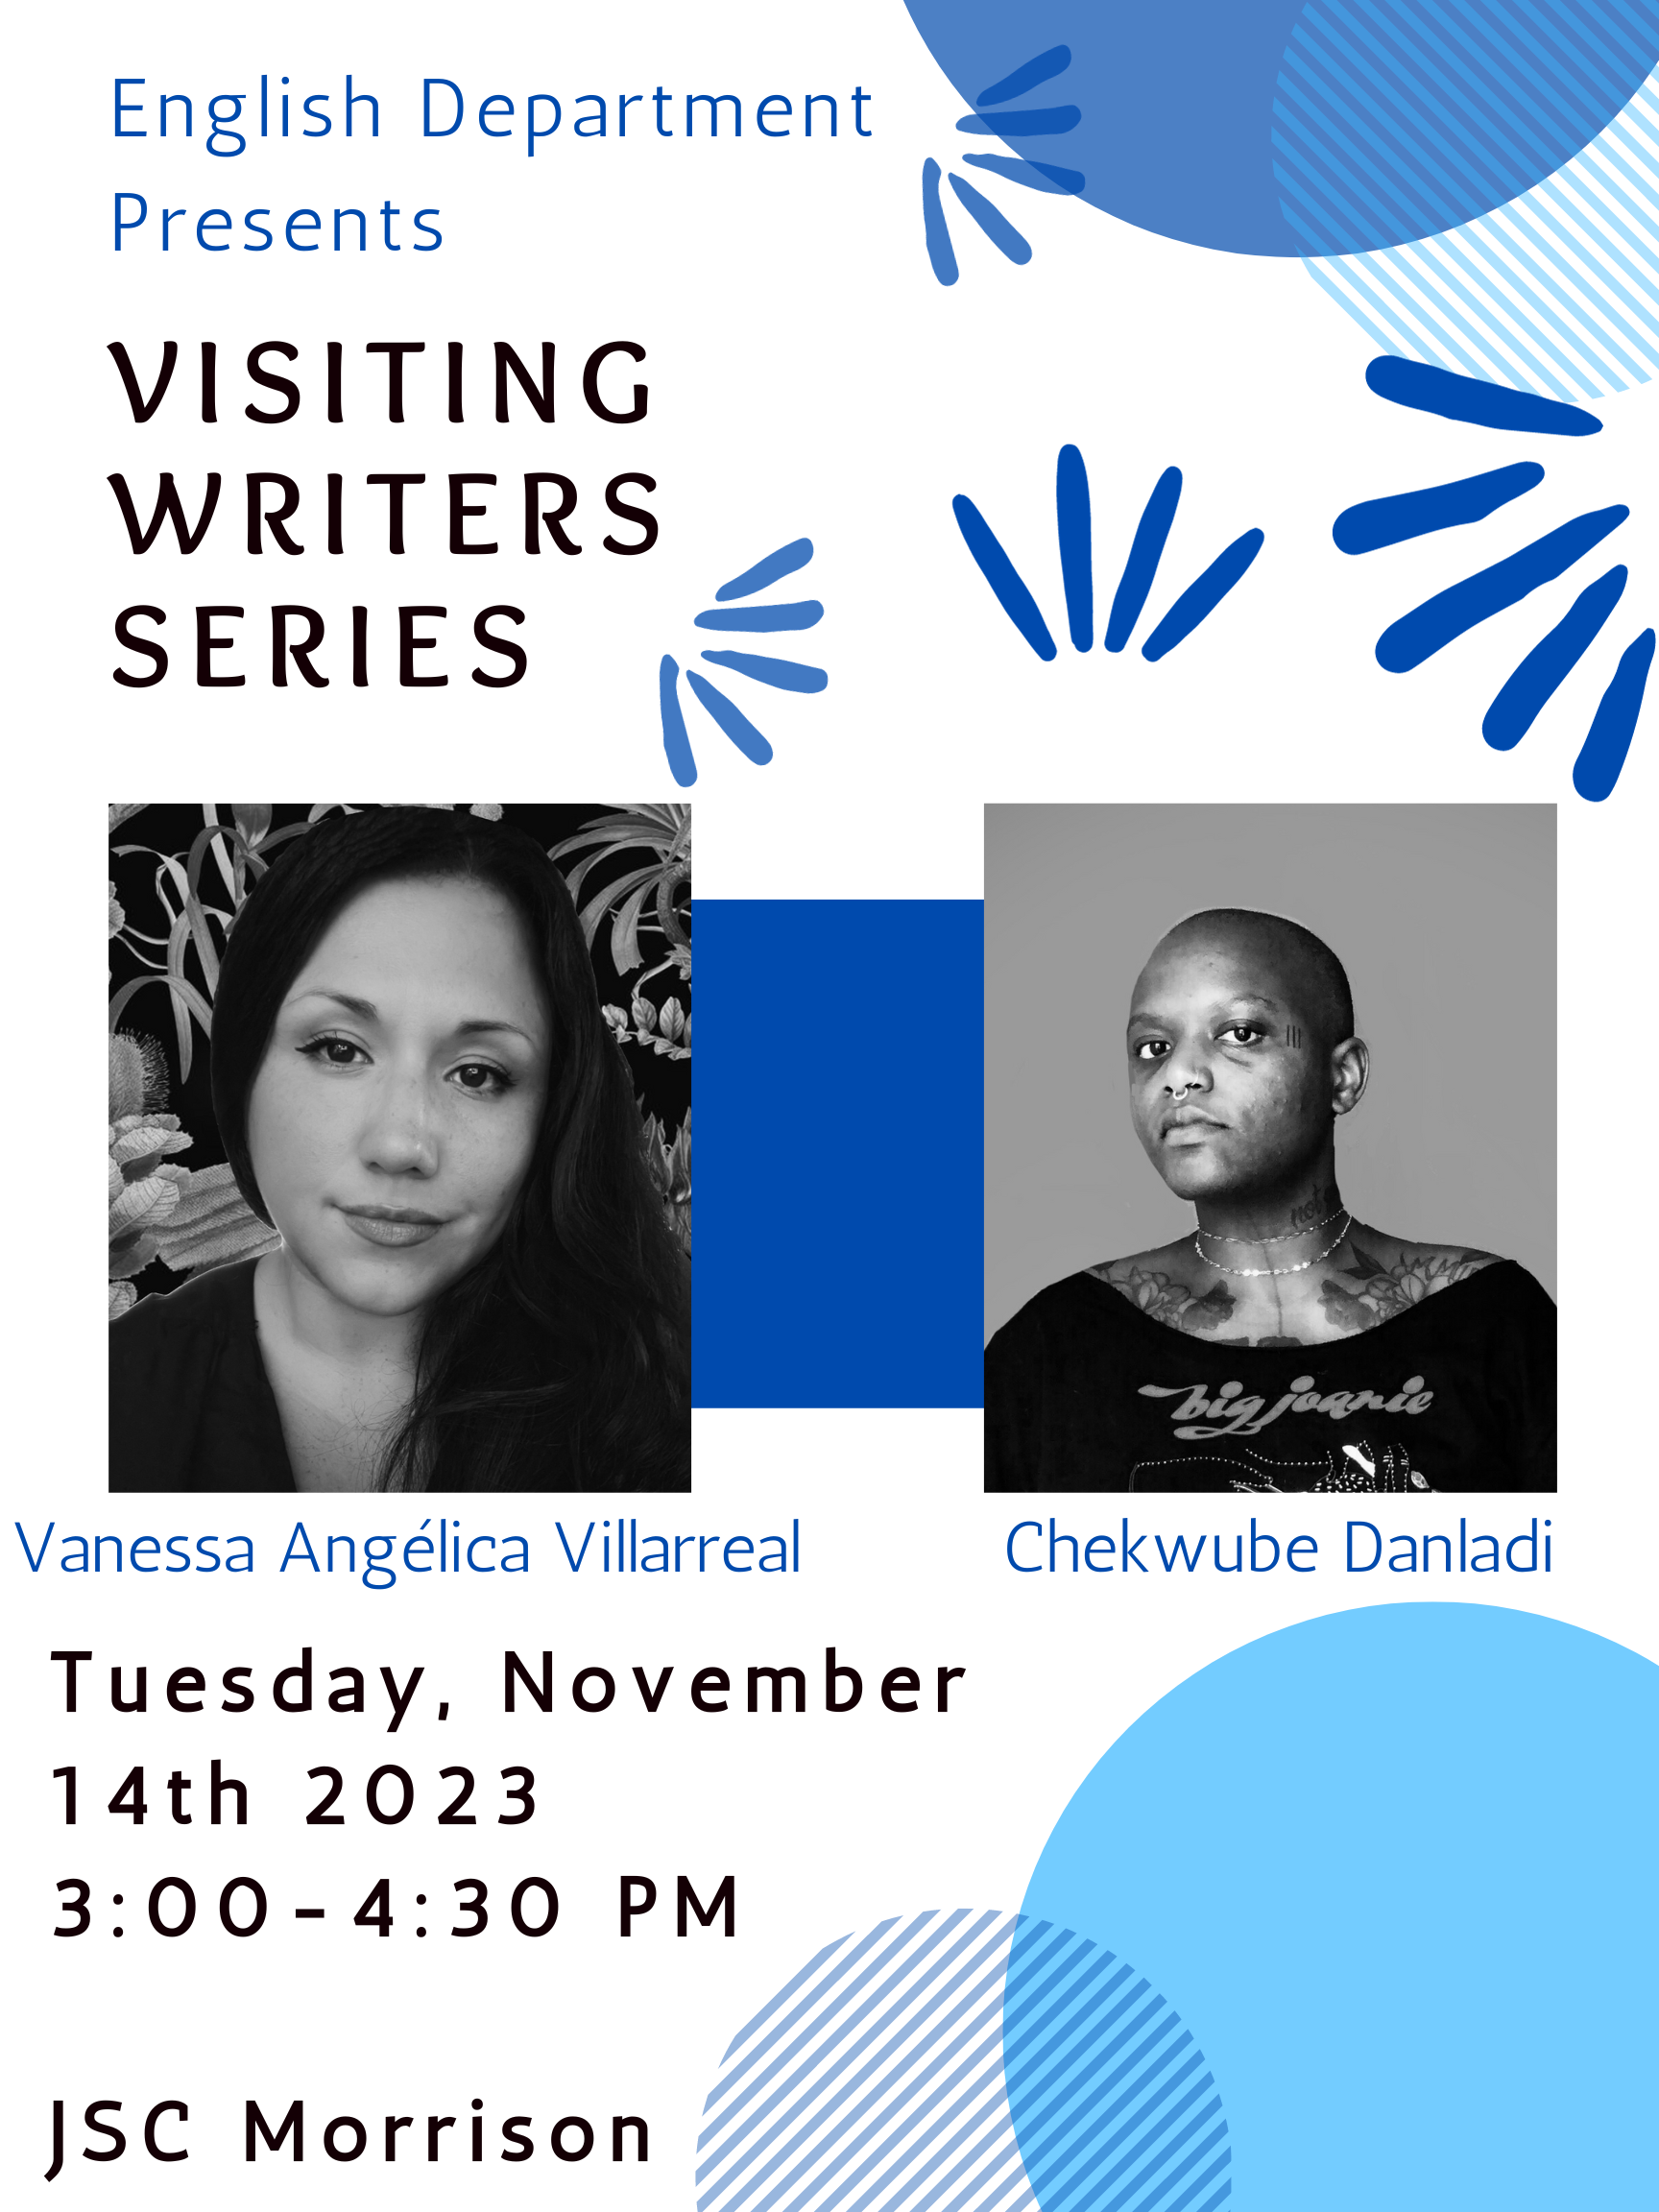 Vanessa Angelica Villareal and Chekwube Danladi -Visiting Writers Series